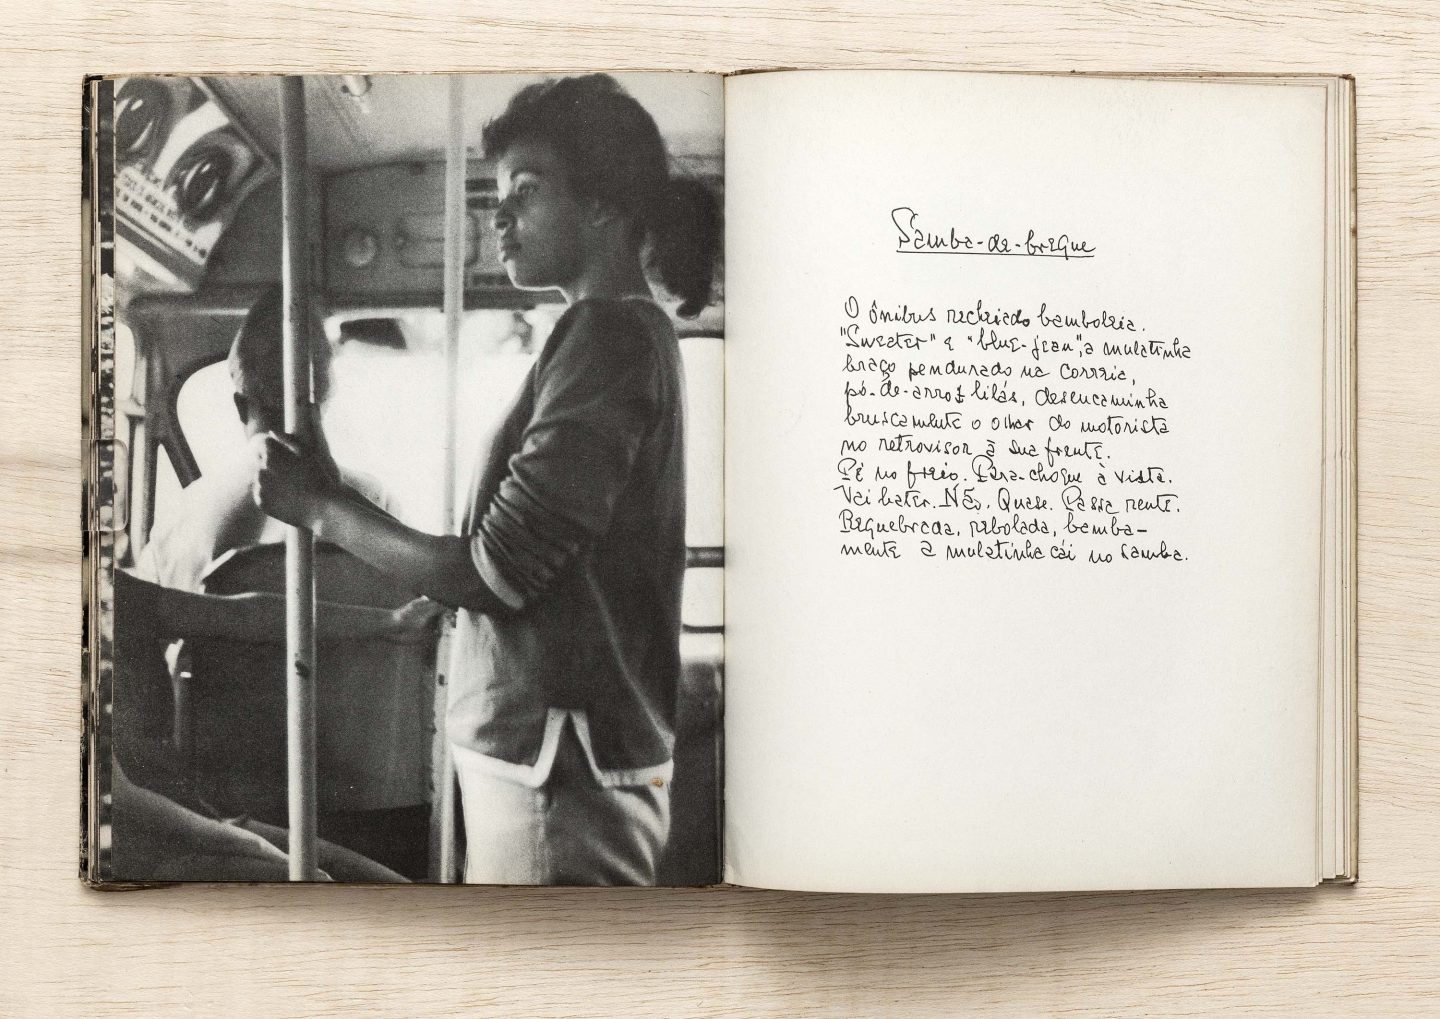 Livro aberto com uma foto em preto e branco de uma pessoa em pé num ônibus segurando-se numa barra, e na página esquerda, um texto escrito a mão onde se lê "Samba-do-brique" e a continuação de um texto.